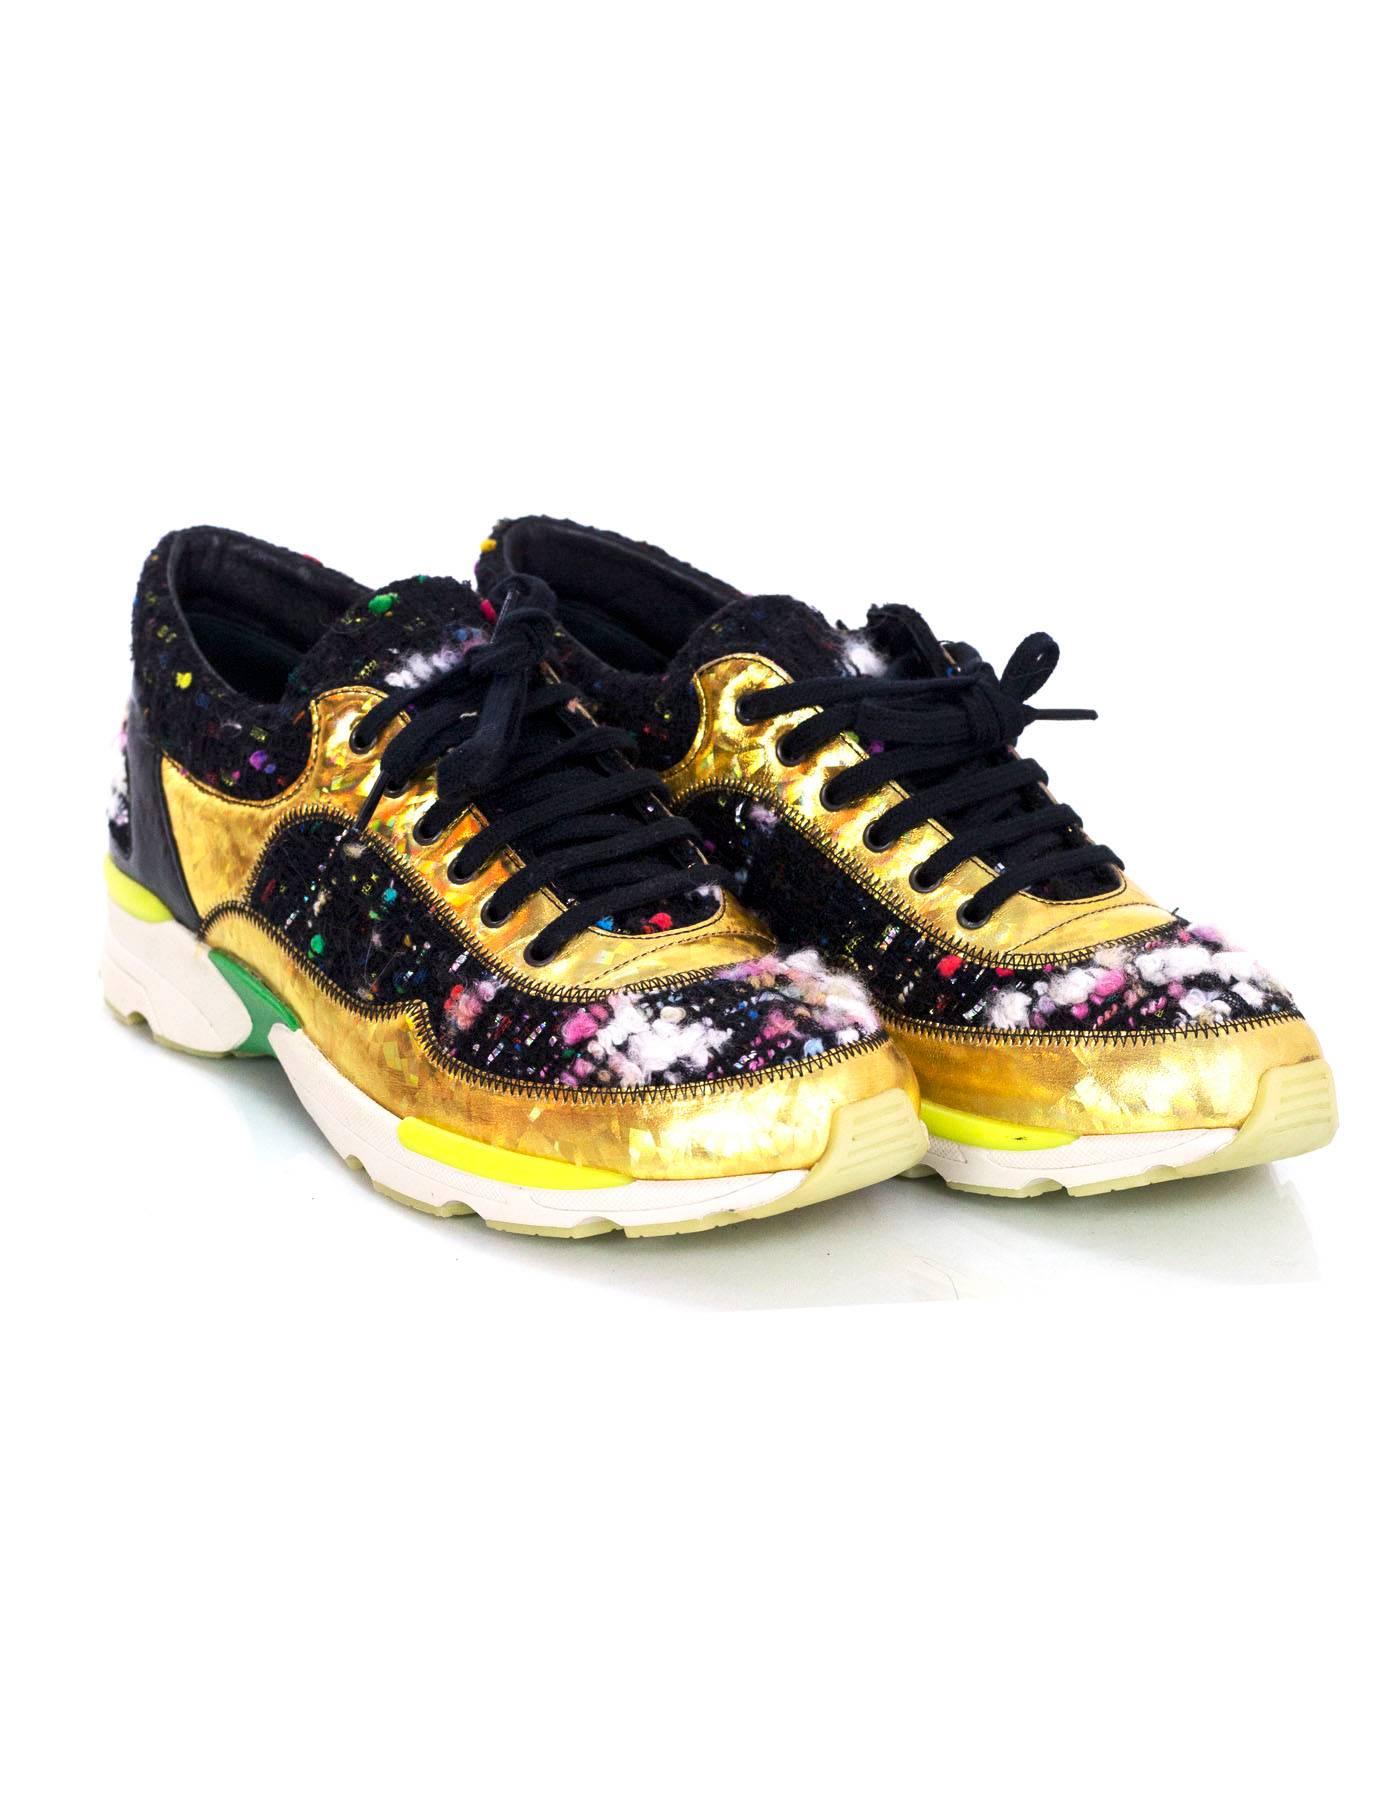 Women's Chanel Tweed & Gold Trainer Sneakers Sz 38.5 rt. $1, 350